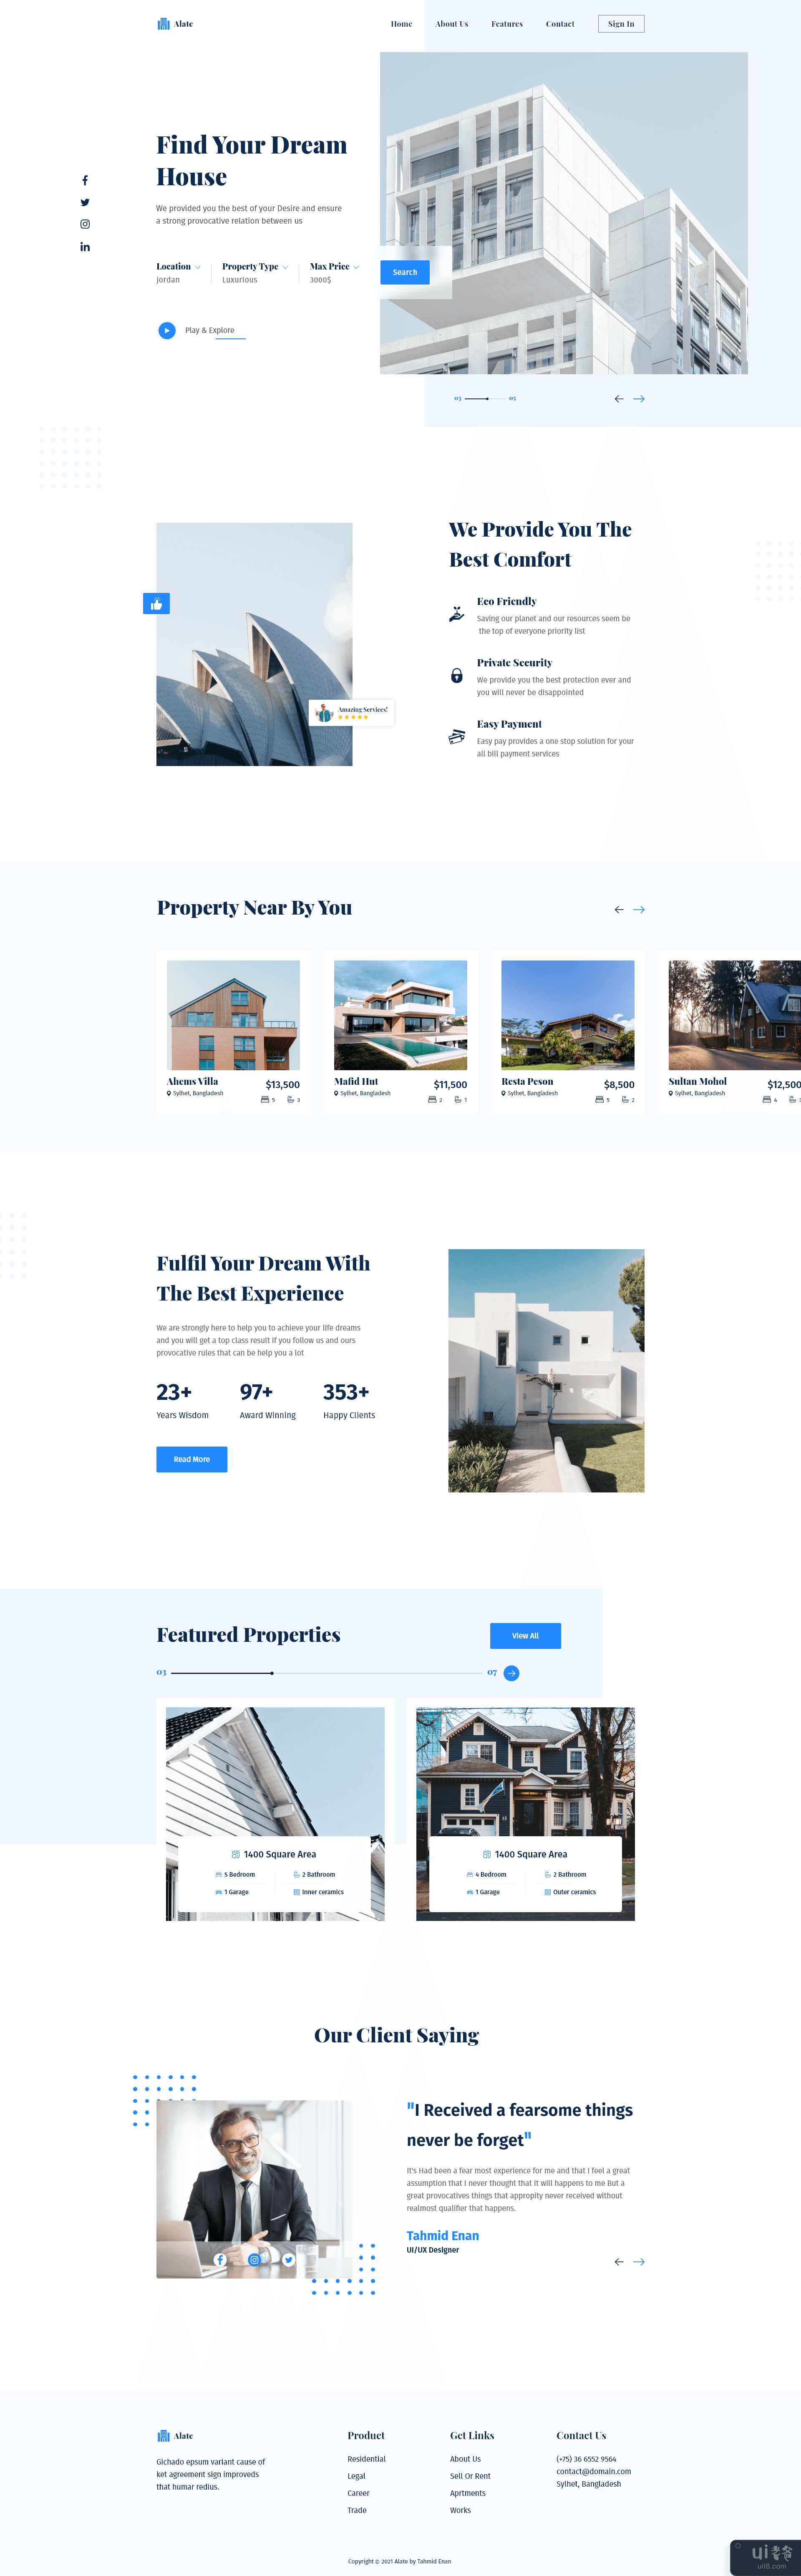 房地产登陆页面(Real Estate Landing Page)插图